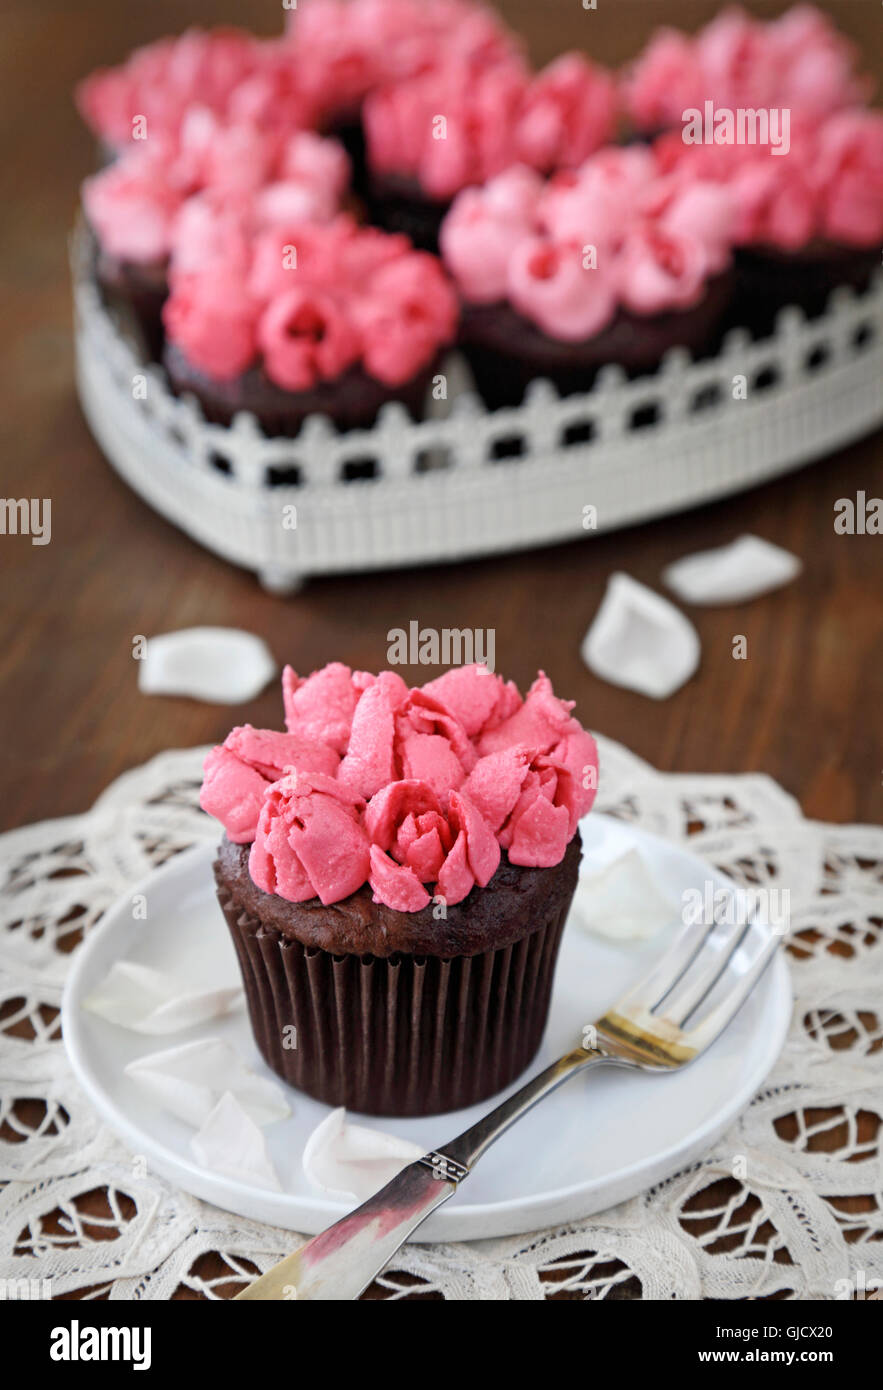 Cupcakes. Petits gâteaux au chocolat avec crème au beurre vanille rose rose Banque D'Images